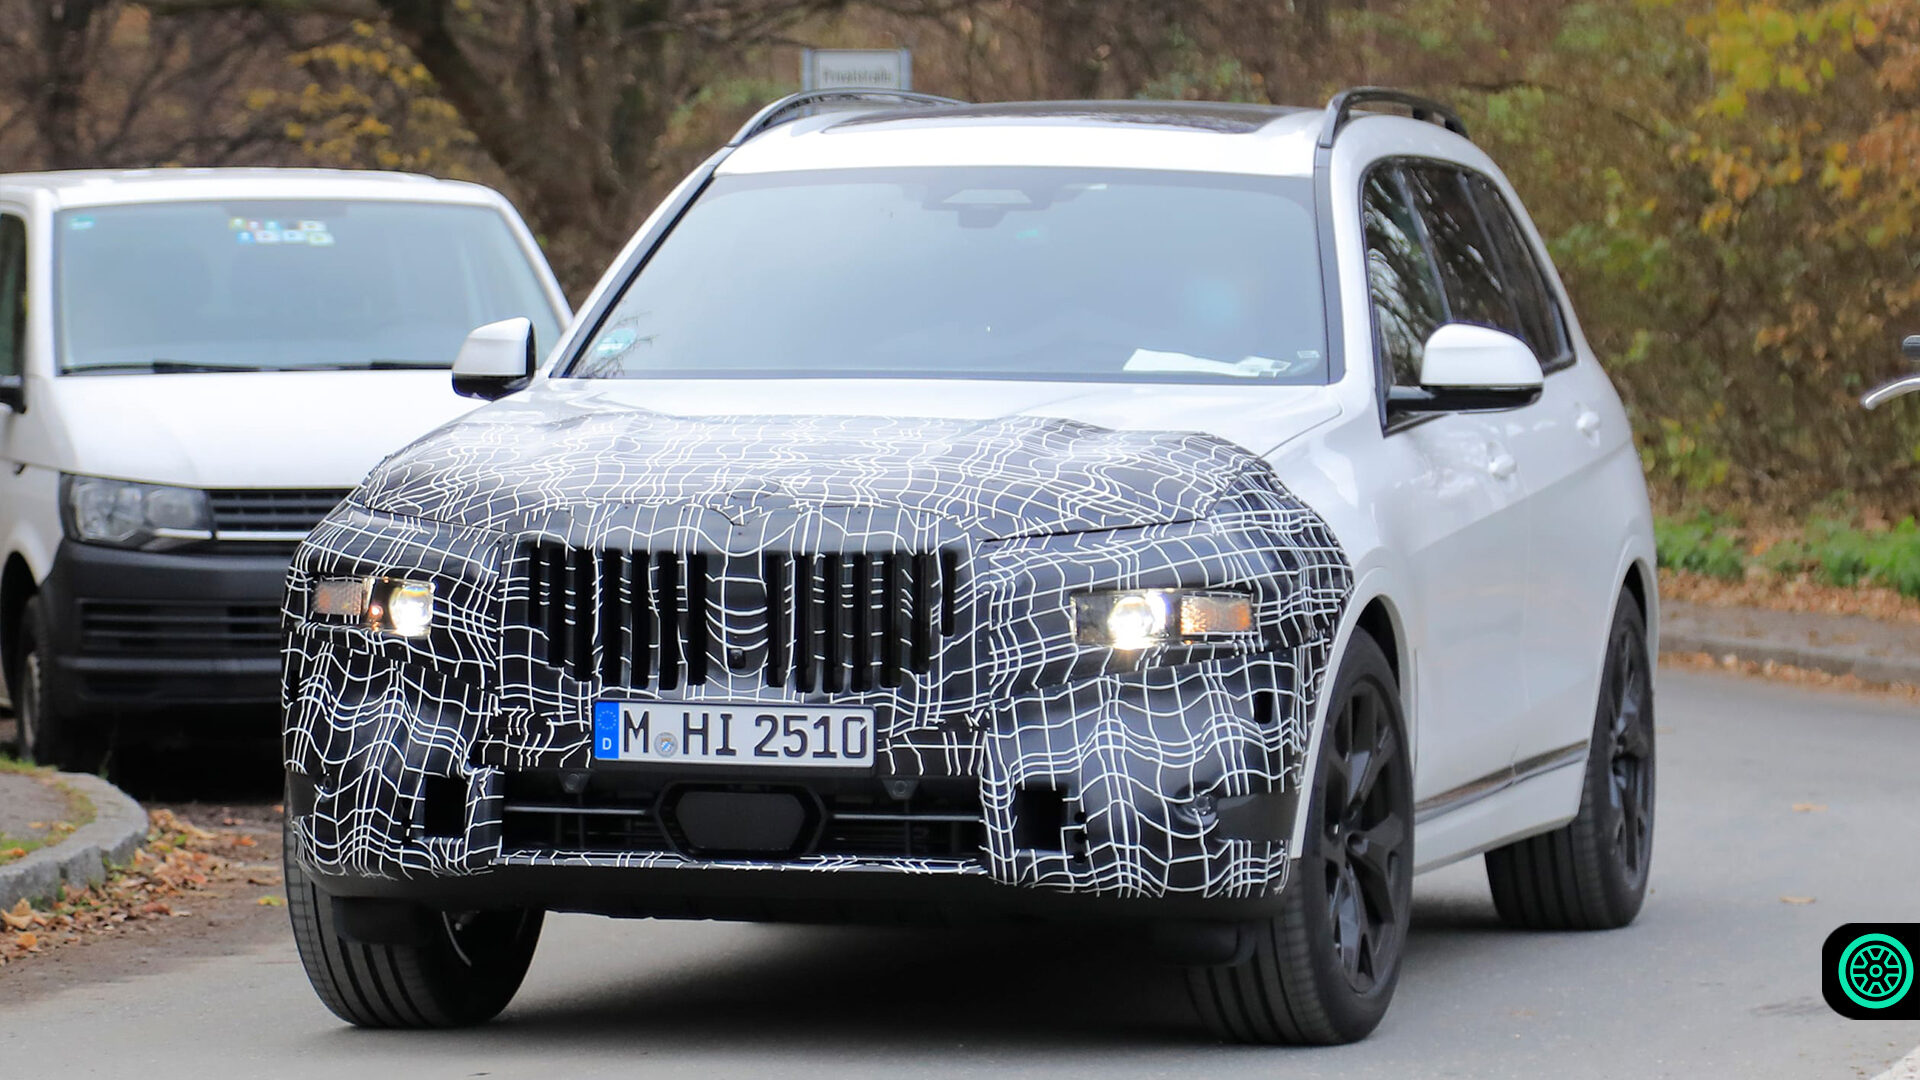 2021 BMW X7 makyajlı olarak Nürburgring'de testlerde görüntülendi 1